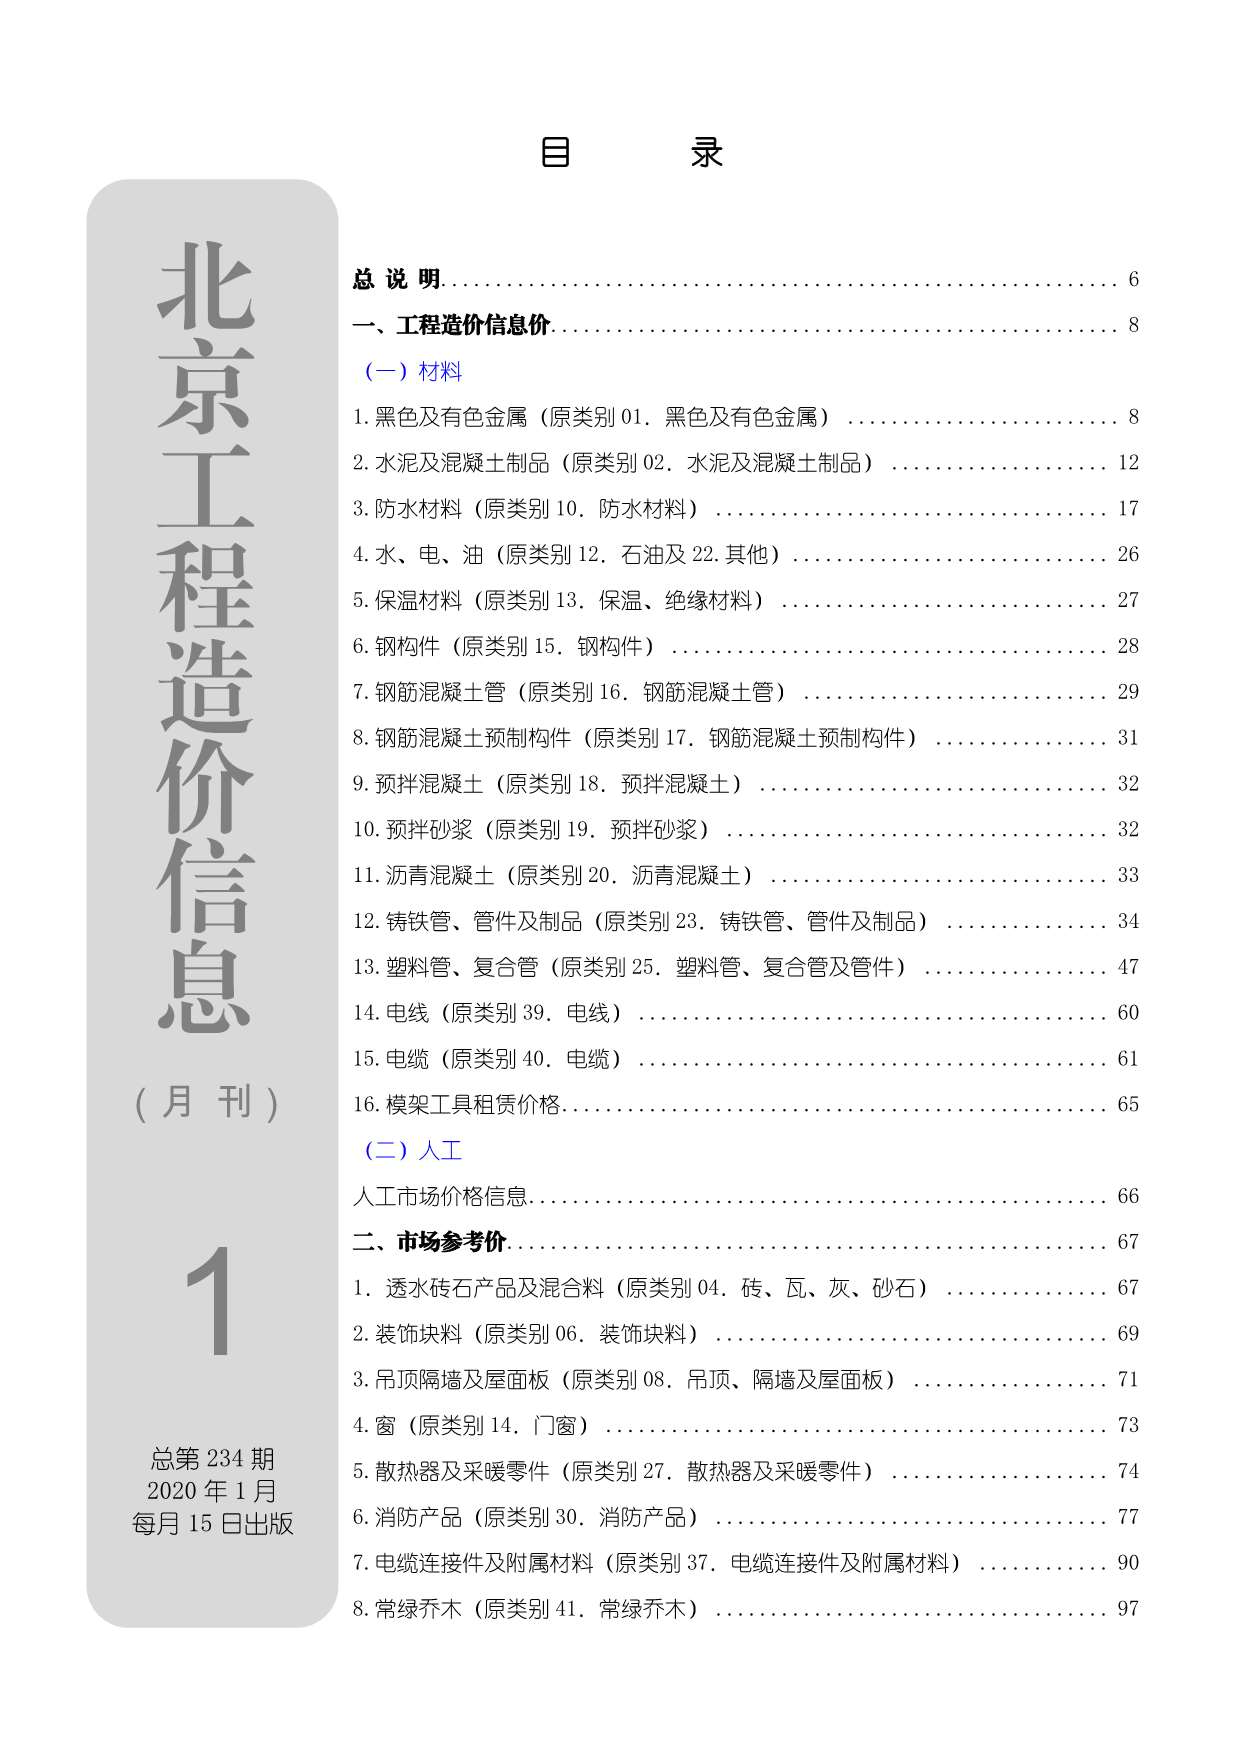 北京市2020年1月工程信息价_北京市信息价期刊PDF扫描件电子版